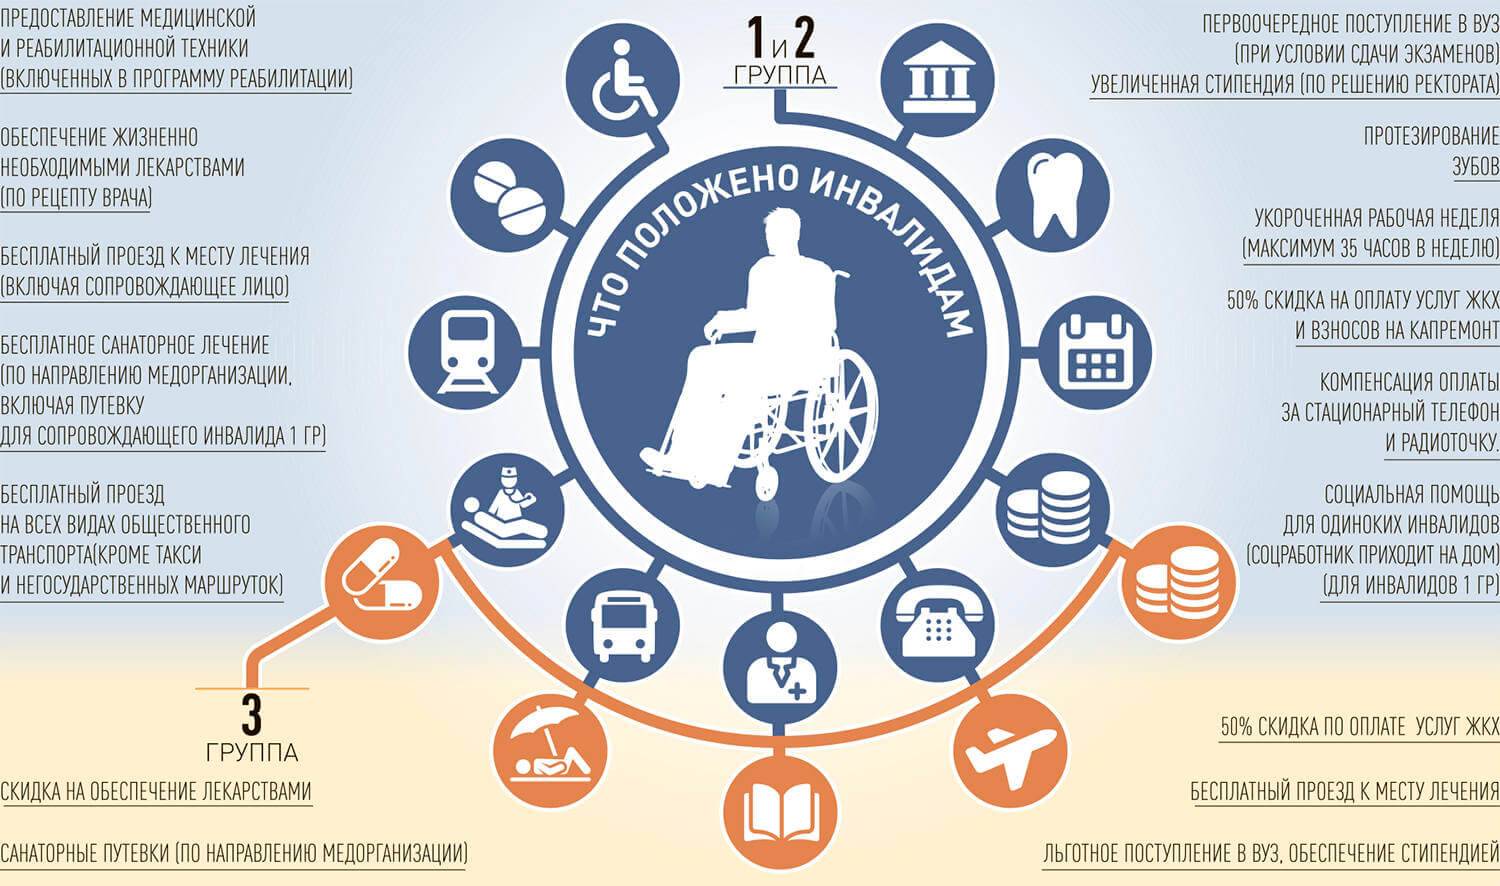 Субсидии для инвалидов: всё о субсидии инвалидам 1, 2 и 3 группы